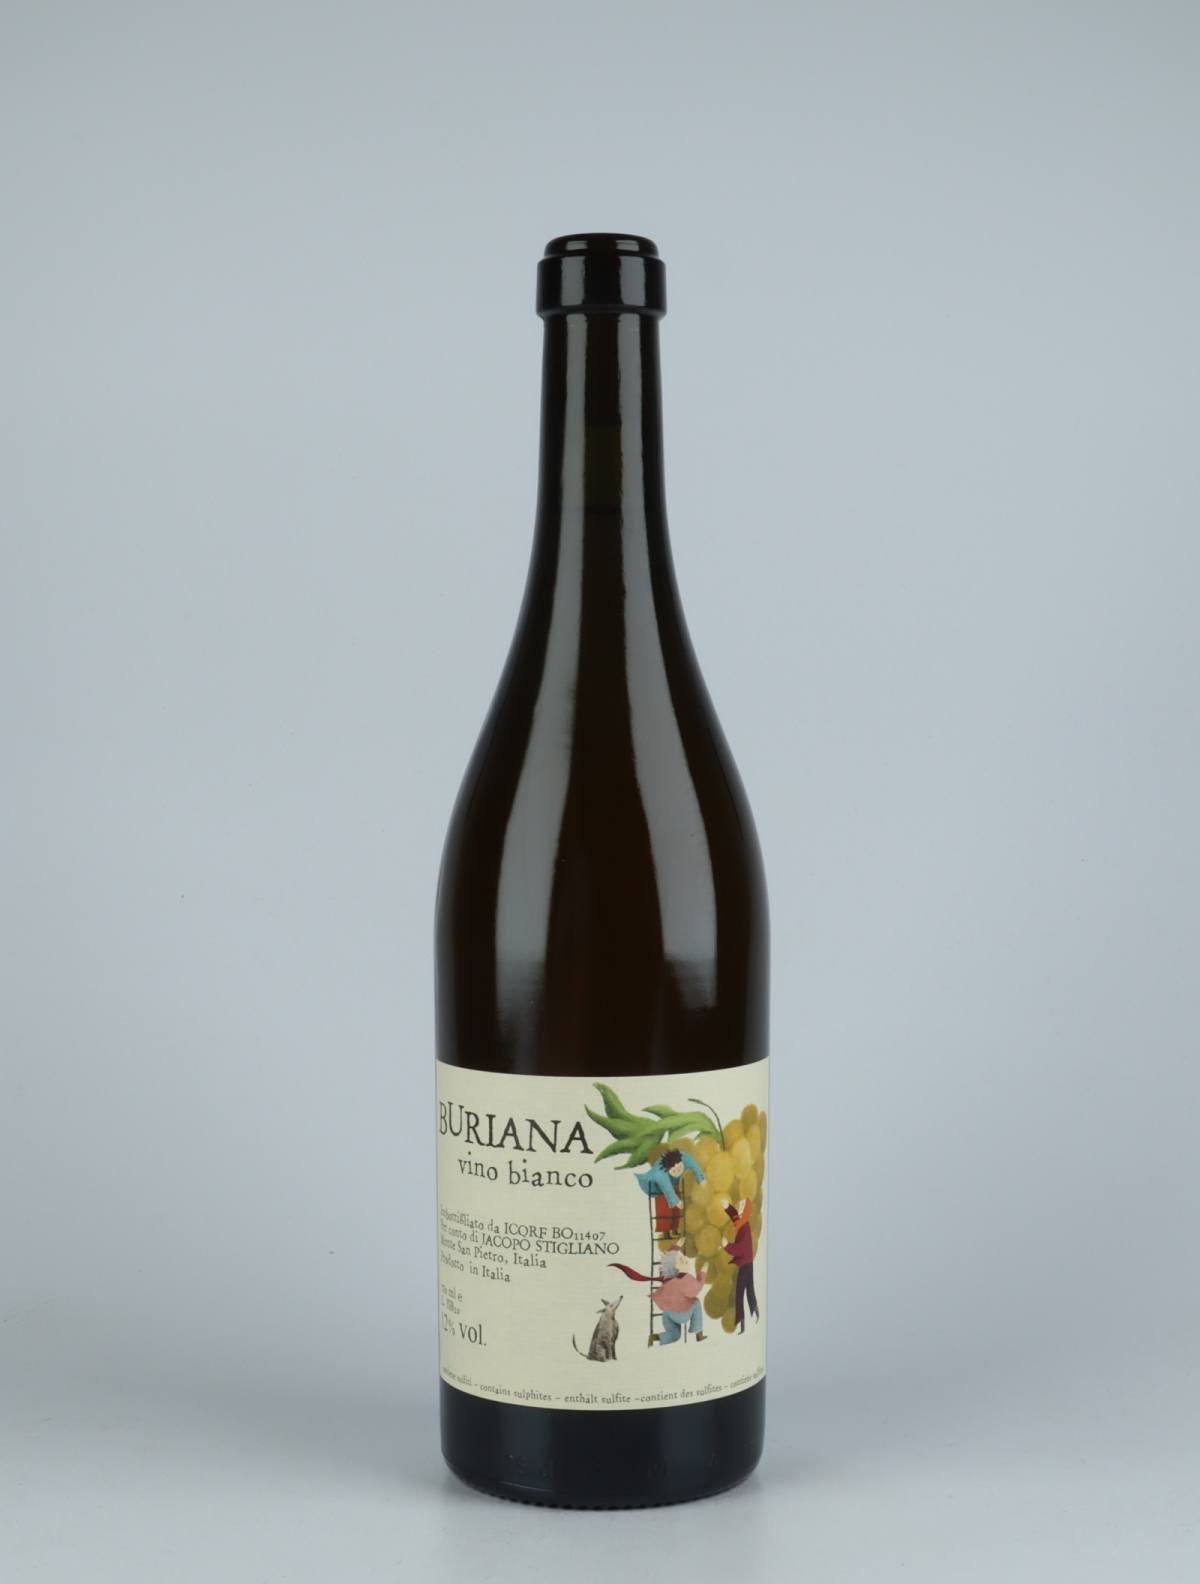 A bottle 2020 Buriana White wine from Jacopo Stigliano, Emilia-Romagna in Italy